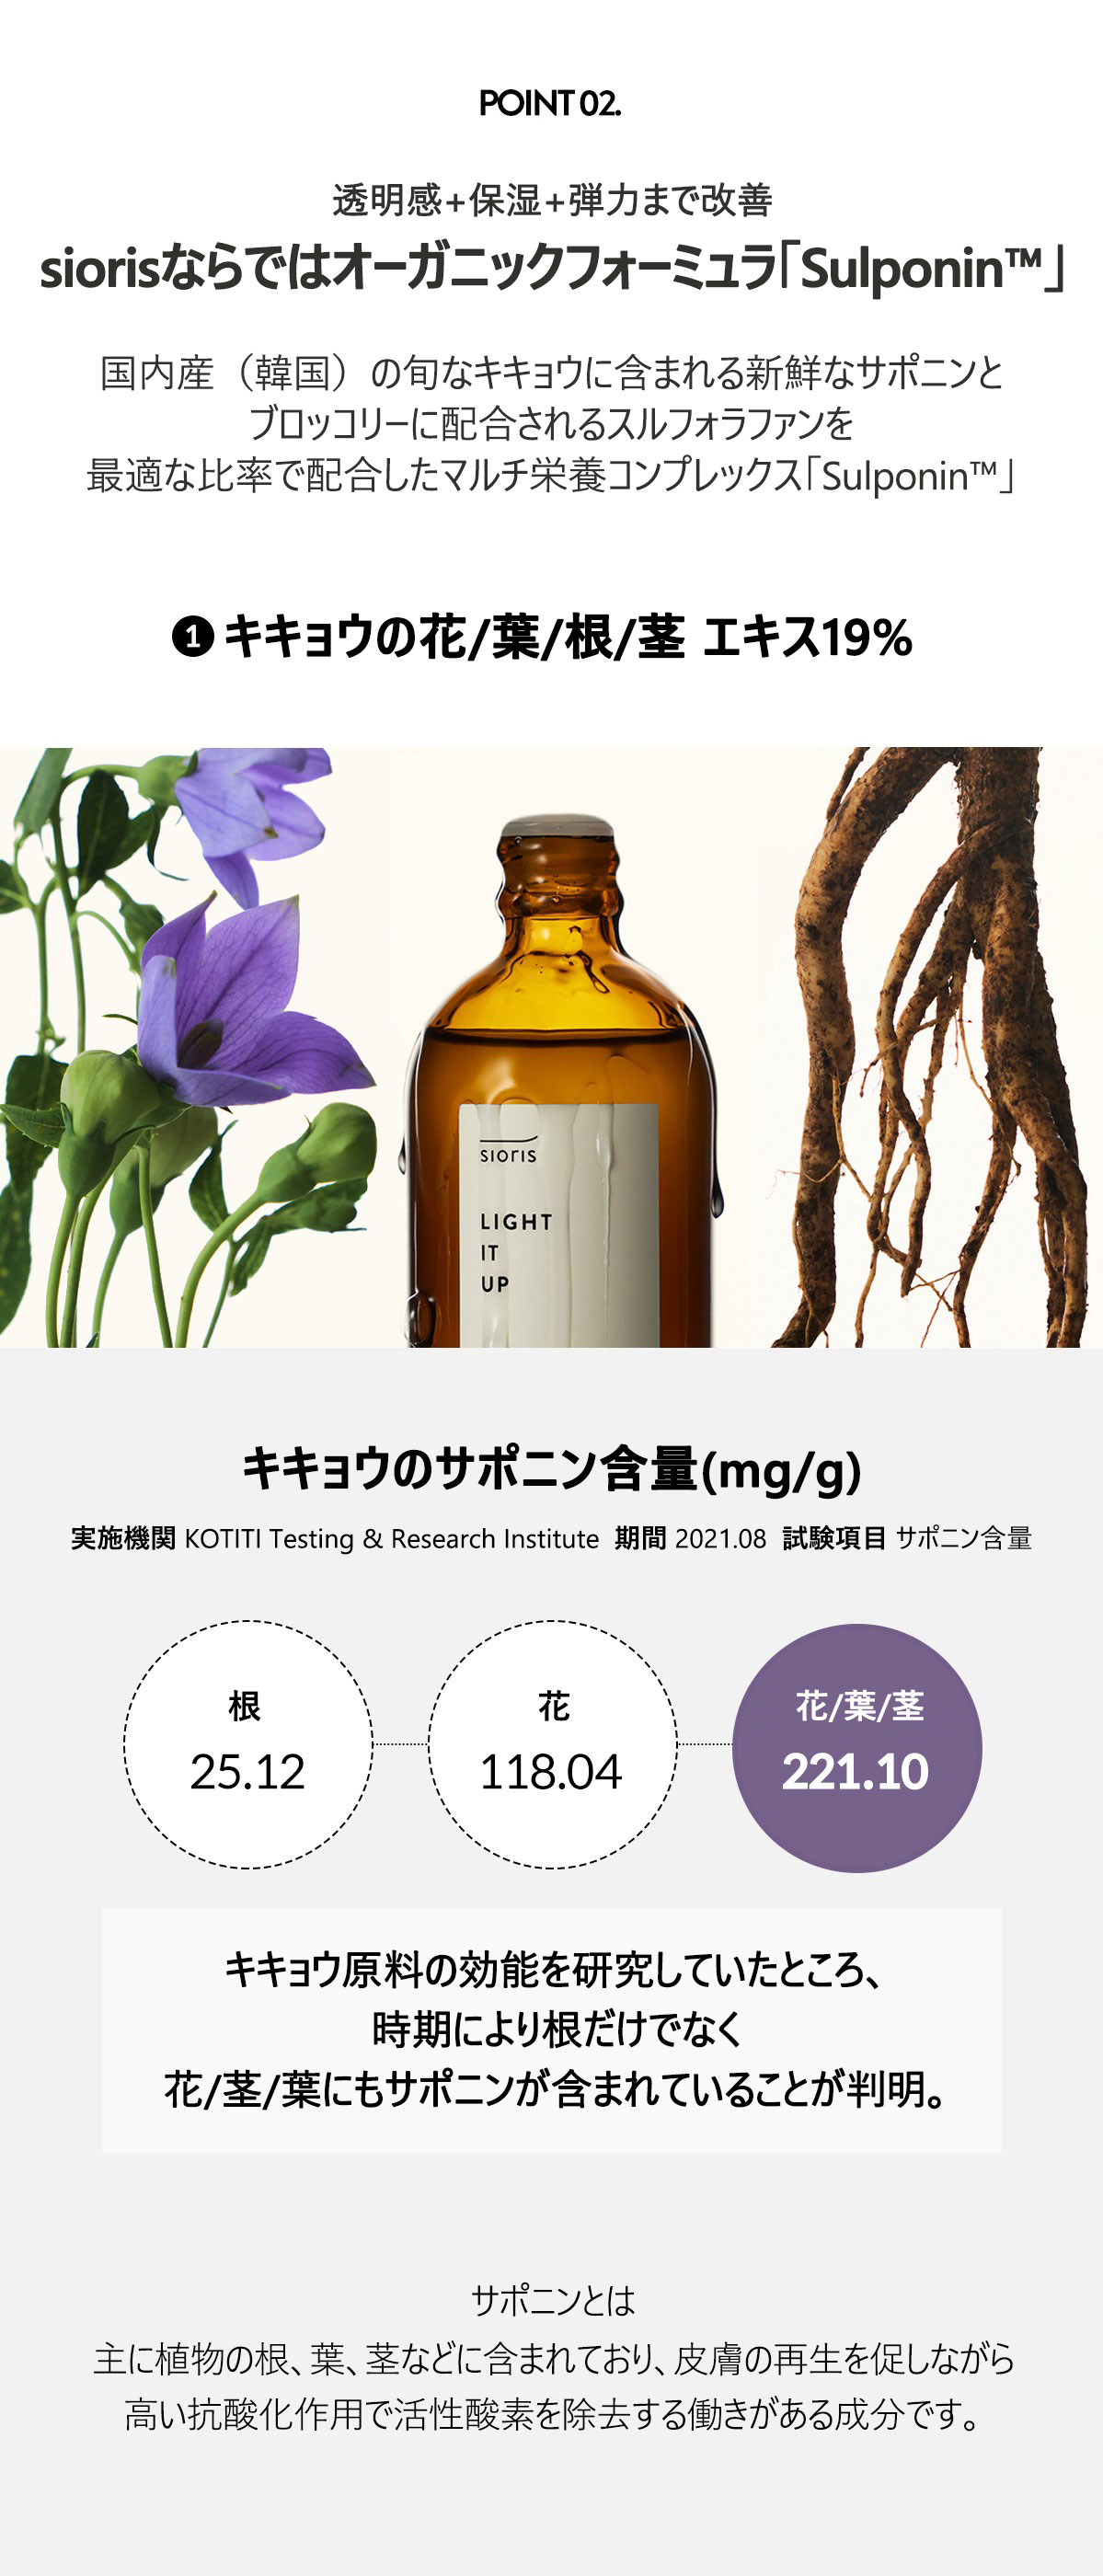  POINT2
透明感+保湿+弾力まで改善siorisならでのオーガニックフォーミュラ「Sulponin™」
国内産（韓国）の旬なキキョウに含まれる新鮮なサポニンとブロッコリーに配合されるスルフォラファンを最適な比率で配合したマルチ栄養コンプレックス「Sulponin™」
①キキョウの花/葉/根/茎 エキス19%
キキョウのサポニン含量（mg/g)
実施機関  KOTITI Testing & Research Institute
期間 2021.08
試験項目 サポニン含量
根 25.12
花 118.04
花/葉/茎 221.10
キキョウ原料の効能を研究していたところ、時期により根だけでなく、花/茎/葉にも*サポニンが含まれていることが判明。*サポニンとは、主に植物の根、葉、茎などに含まれており、皮膚の再生を促しながら高い抗酸化作用で活性酸素を除去する働きがある成分。